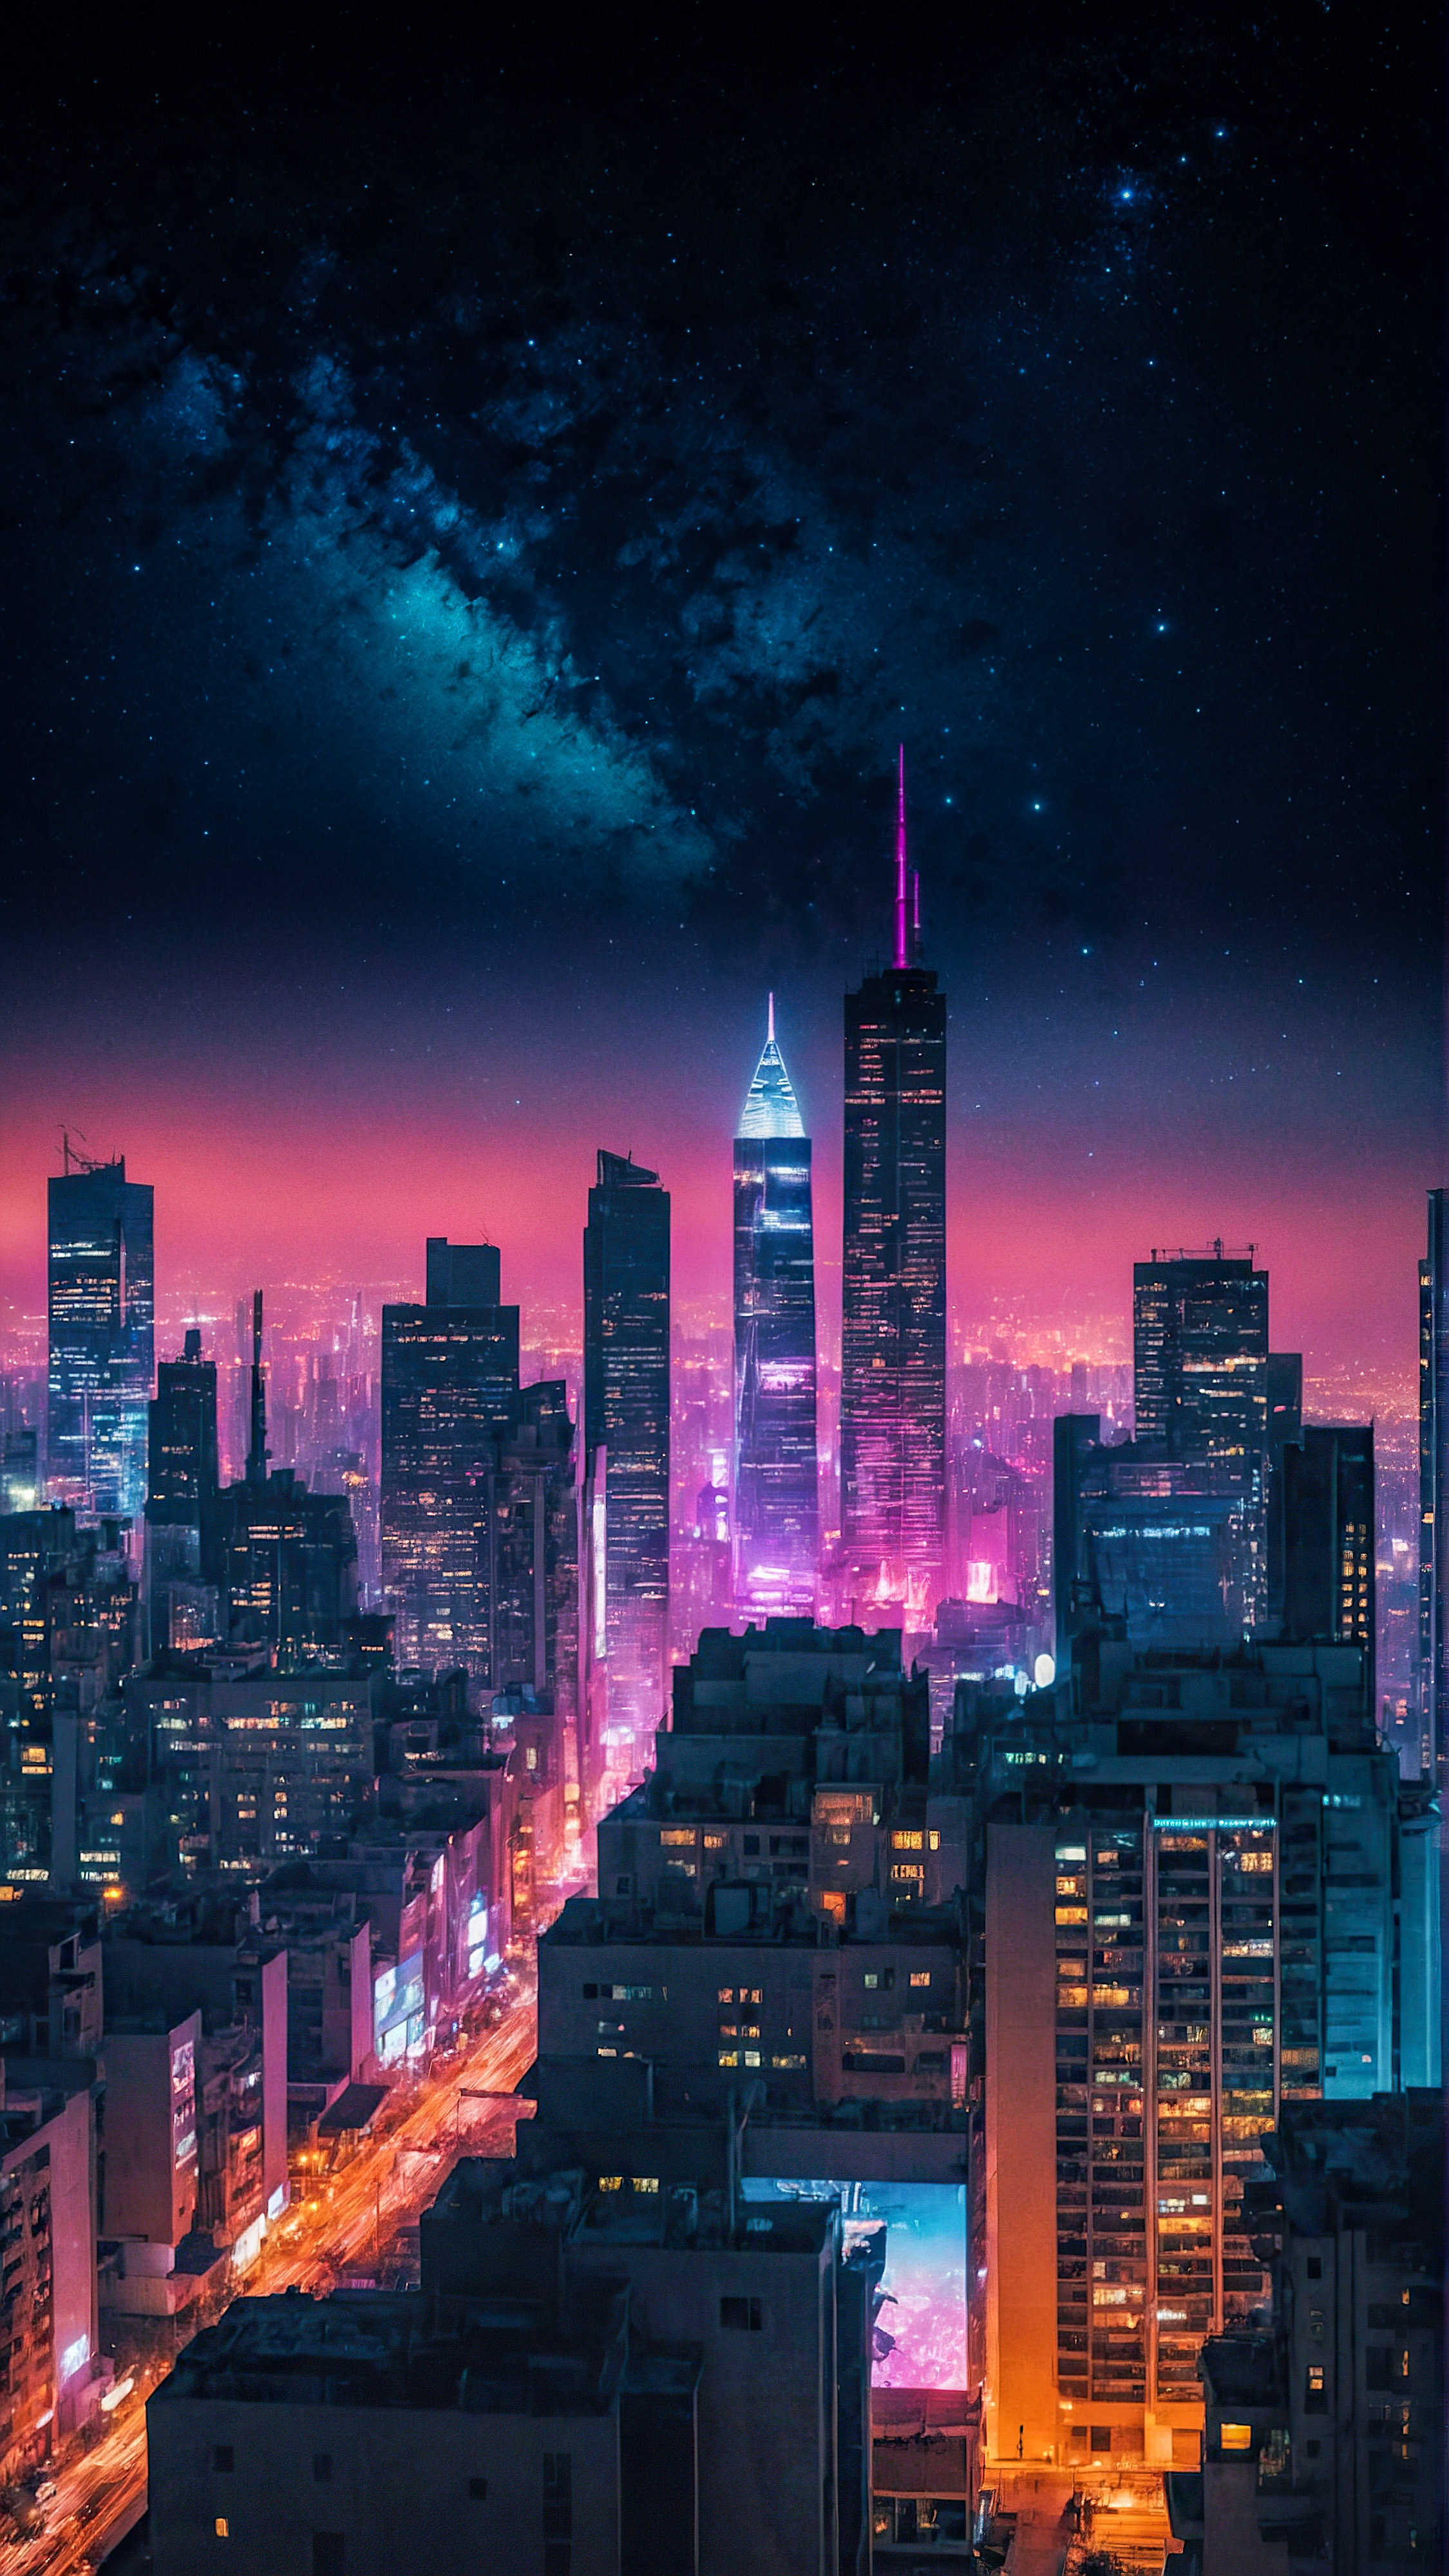 Transformez l'apparence de votre appareil avec nos arrière-plans cool pour l'écran d'accueil de l'iPhone, présentant un paysage urbain futuriste illuminé par des lumières néon sous un ciel étoilé.